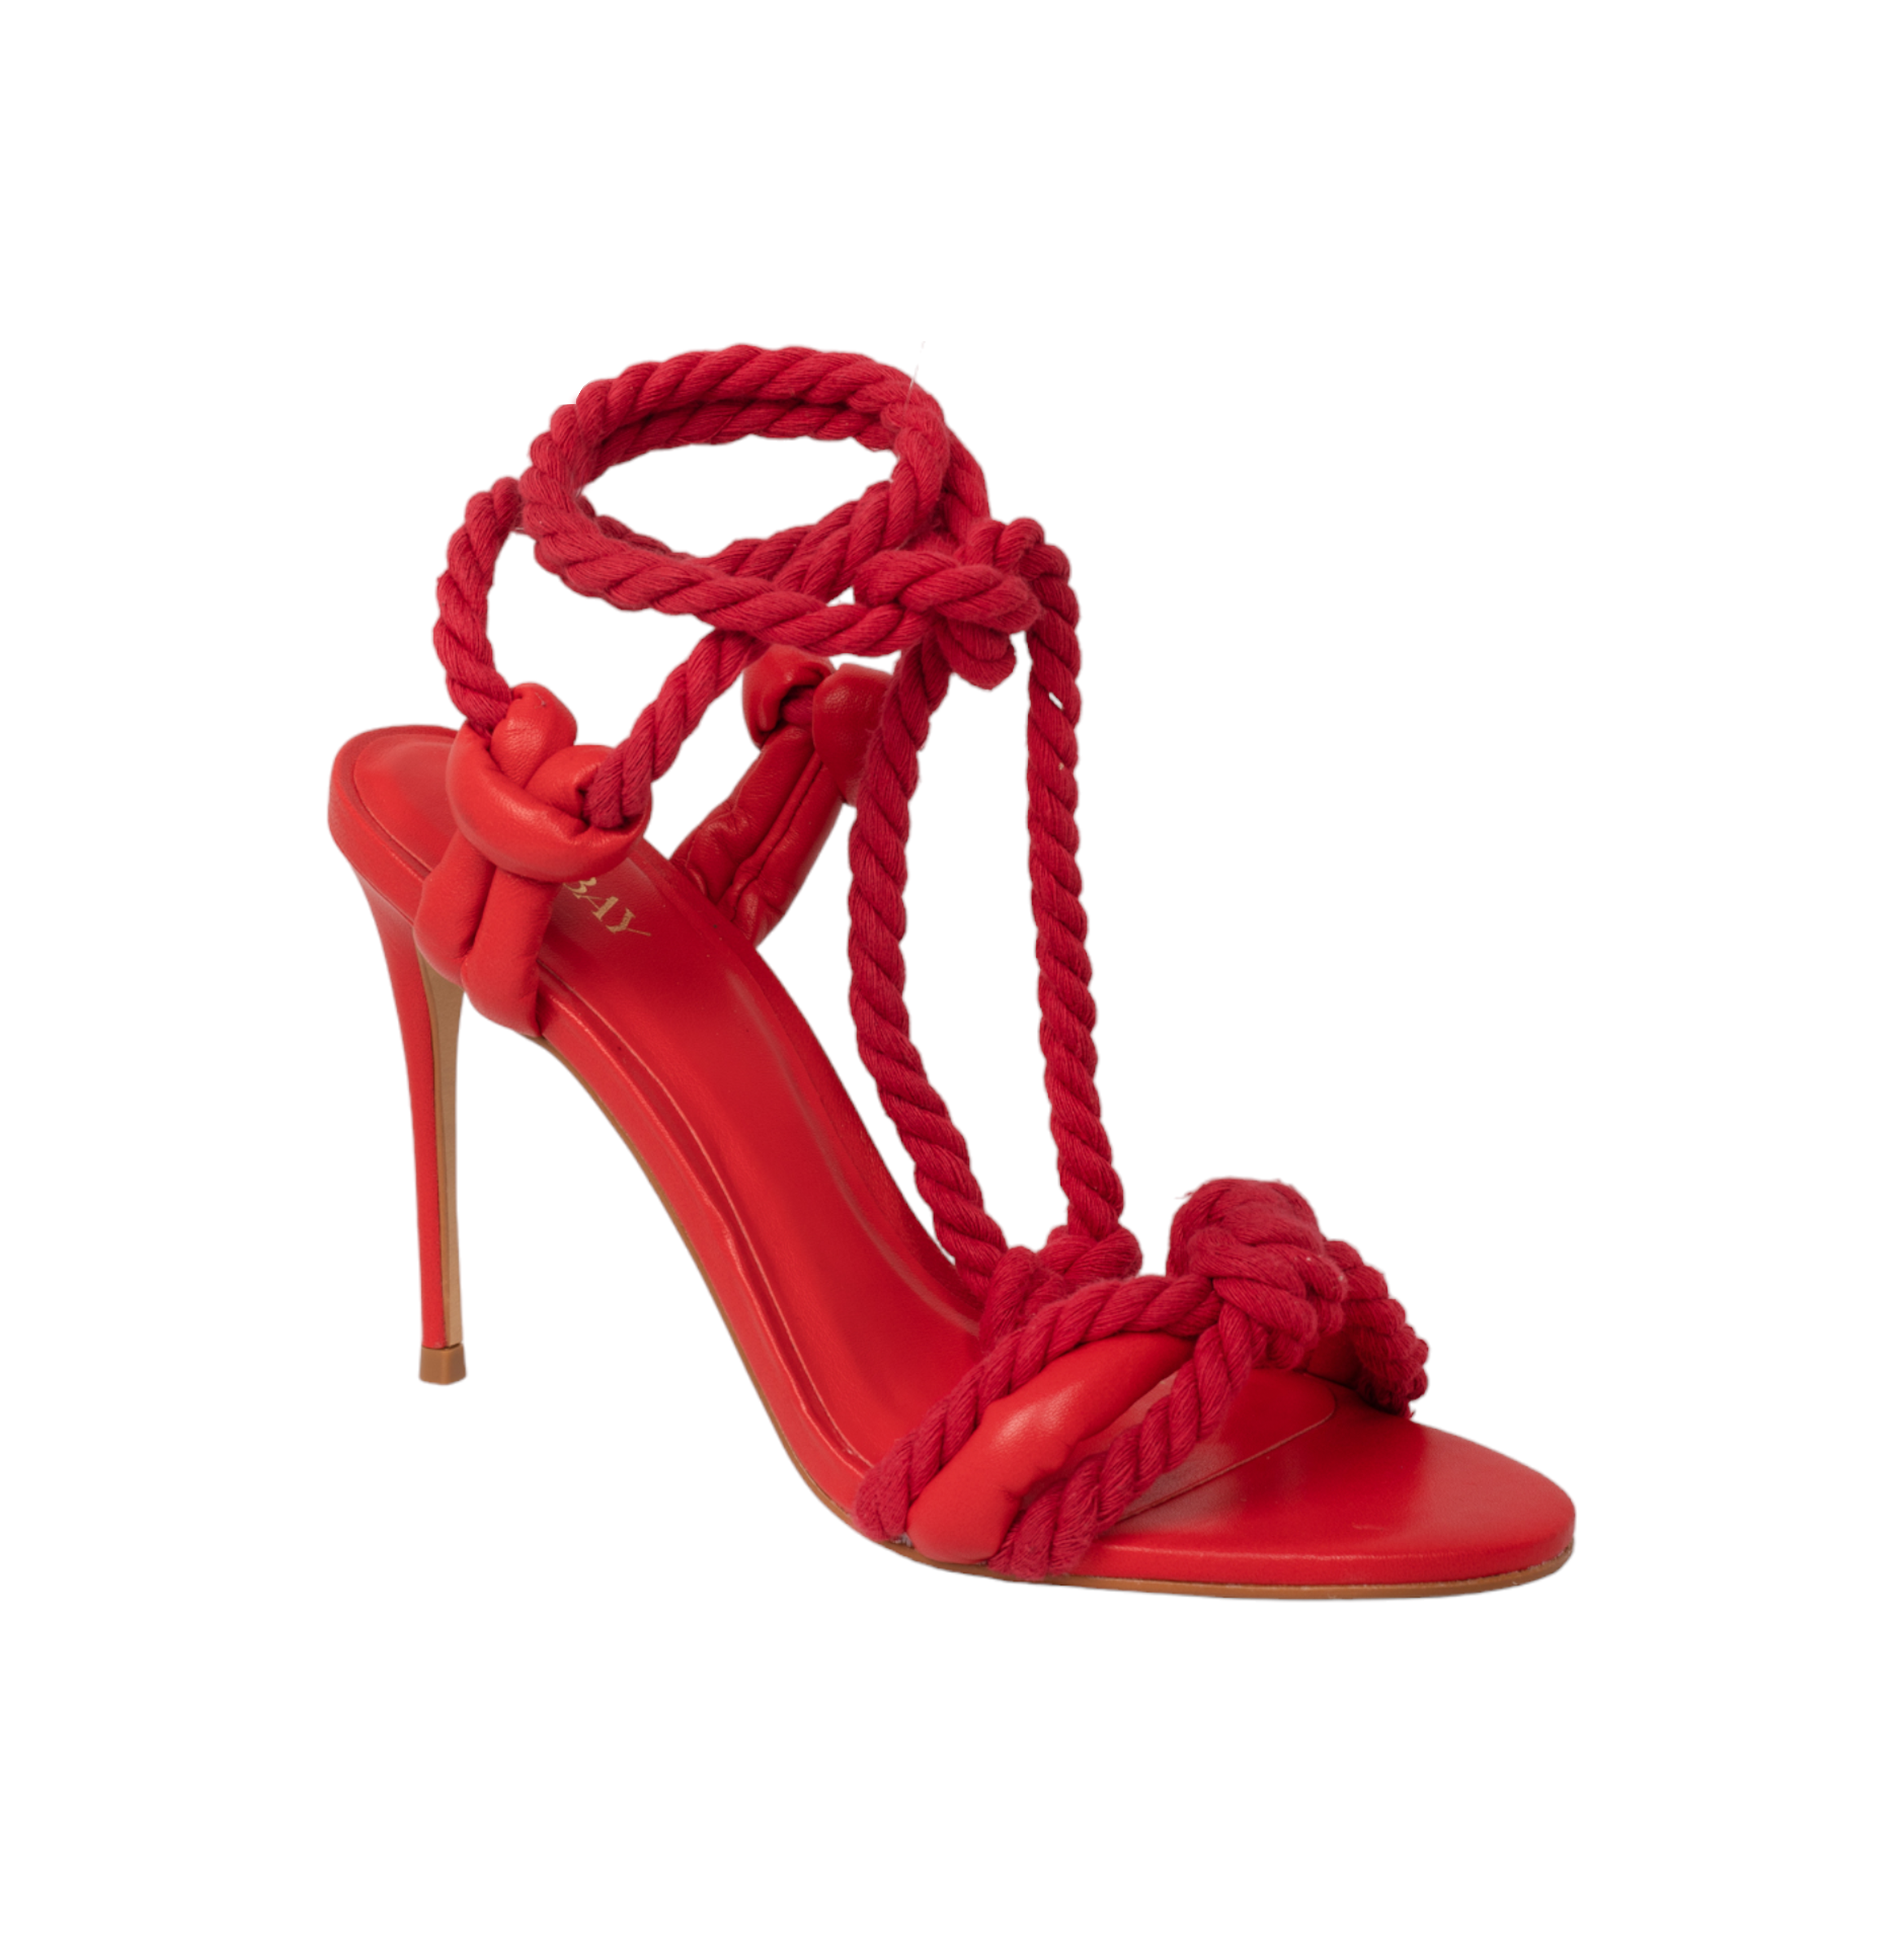 Arenisca High Heel Sandals - Red High Heels TARBAY   